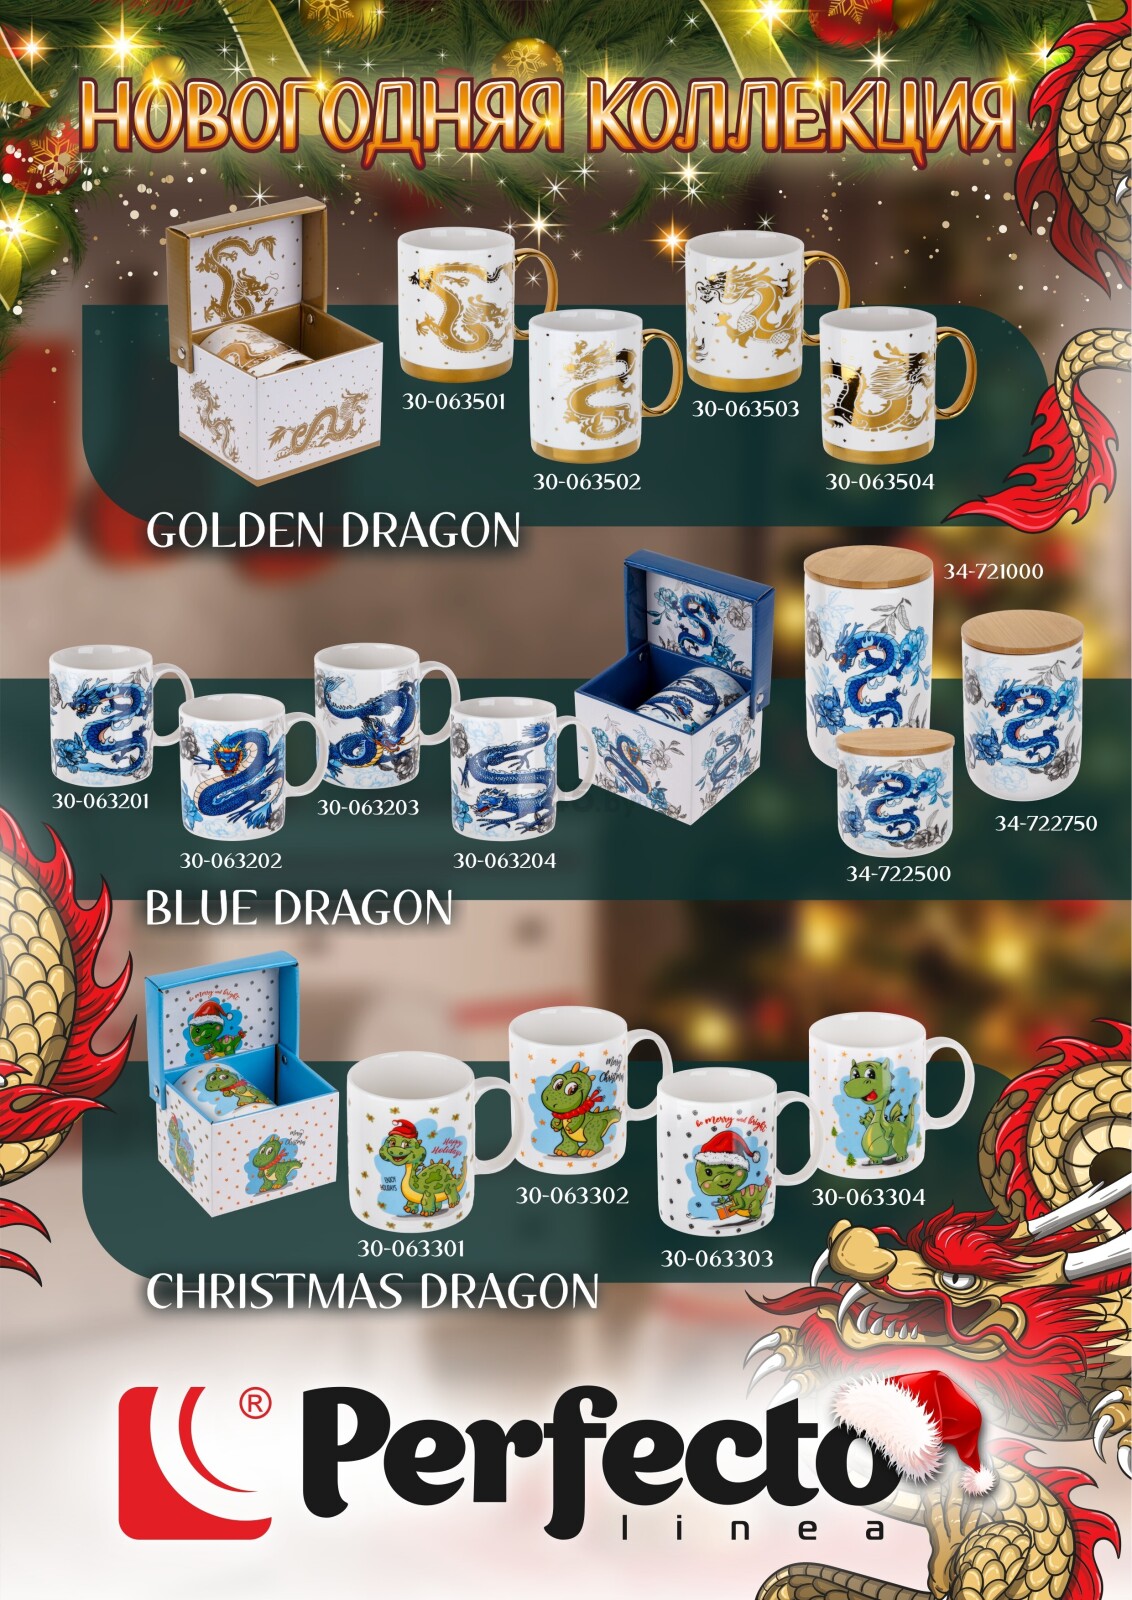 Кружка керамическая PERFECTO LINEA Christmas Dragon-1 360 мл (30-063301) - Фото 4